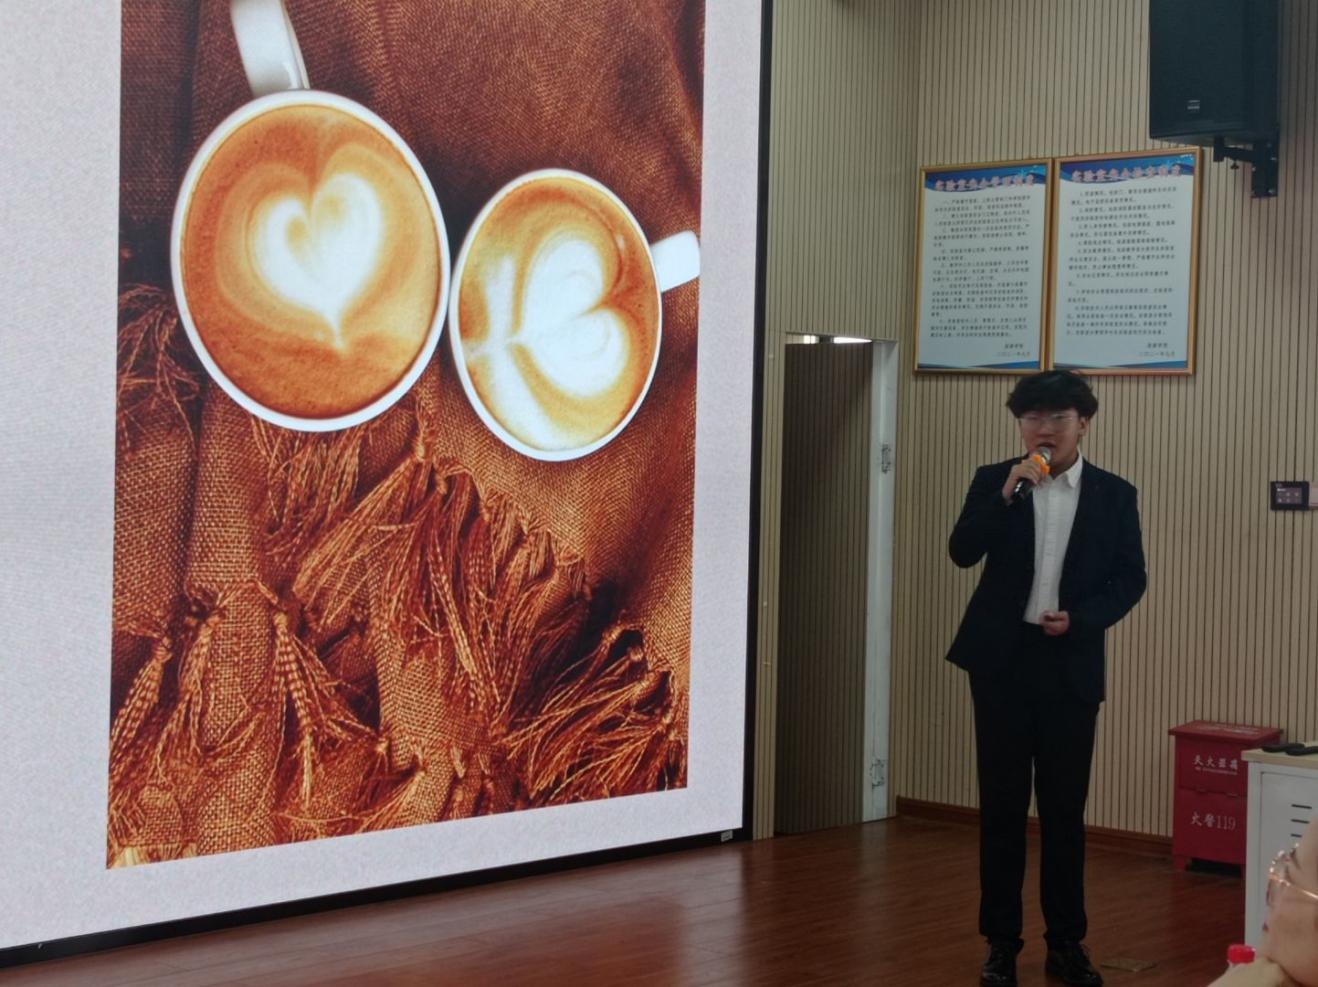 制作醇美咖啡 培养创新创业意识 提升专业素养 海南师范大学2138cn太阳集团古天乐酒店管理系 “我的